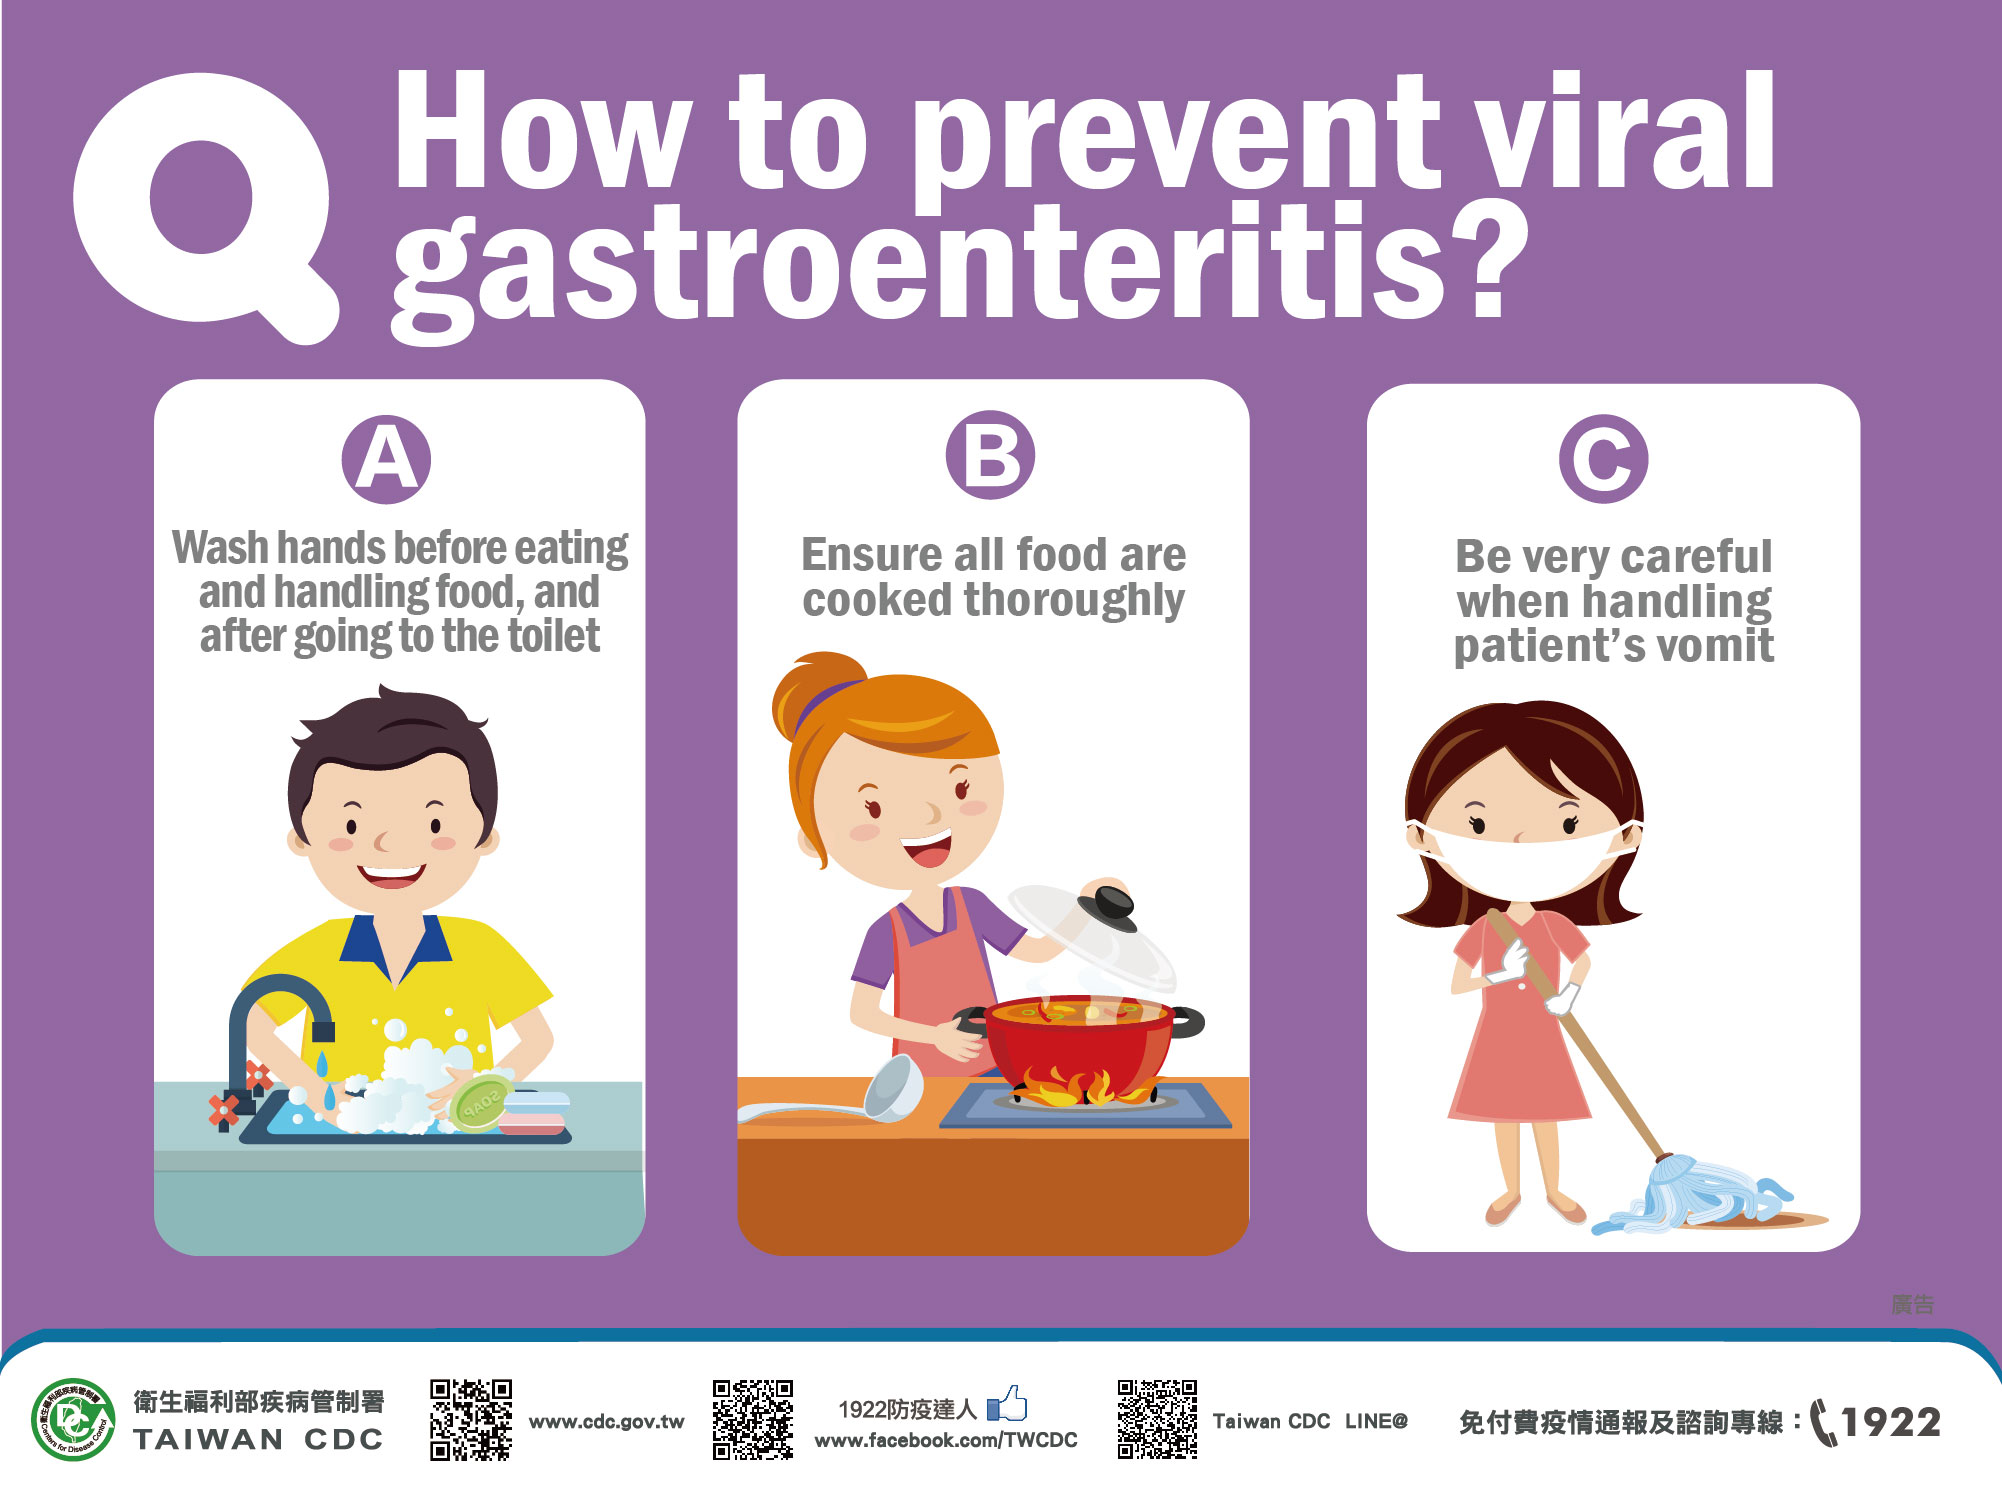 詳如附件【click me】How to prevent viral gastroenteritis？如何預防病毒性腸胃炎（英文）